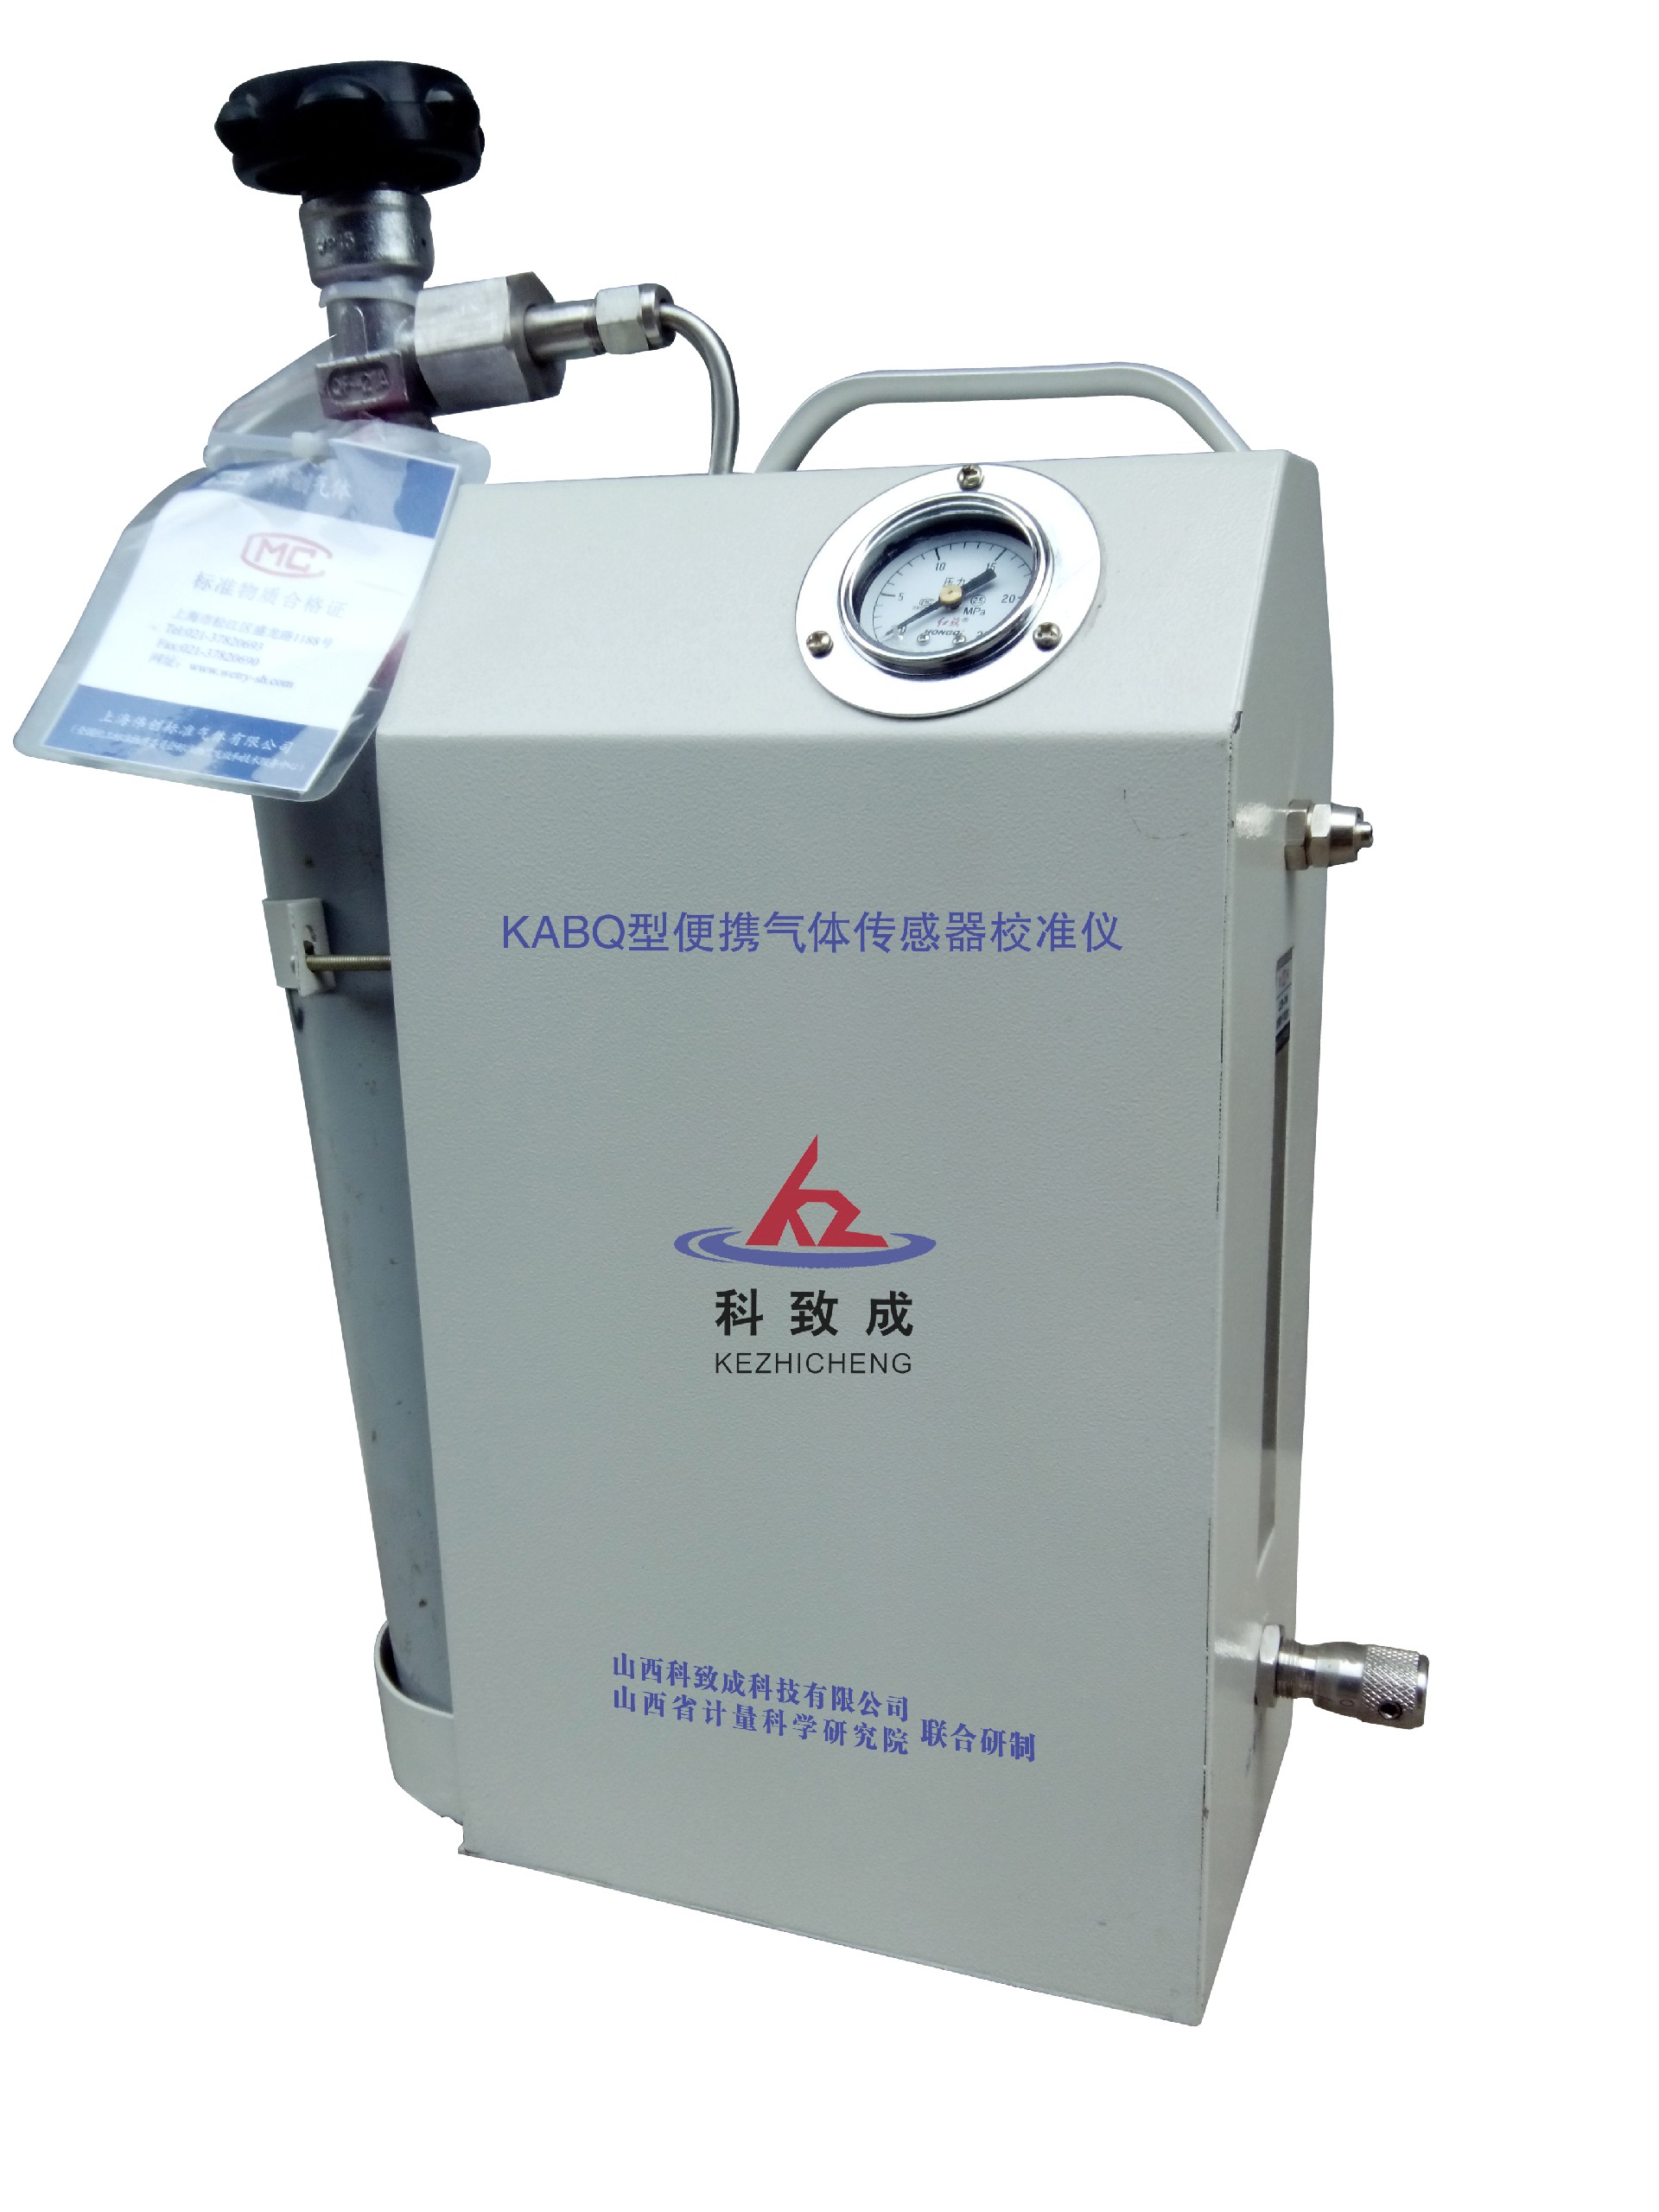 安阳KABQ型便携气体传感器校准仪